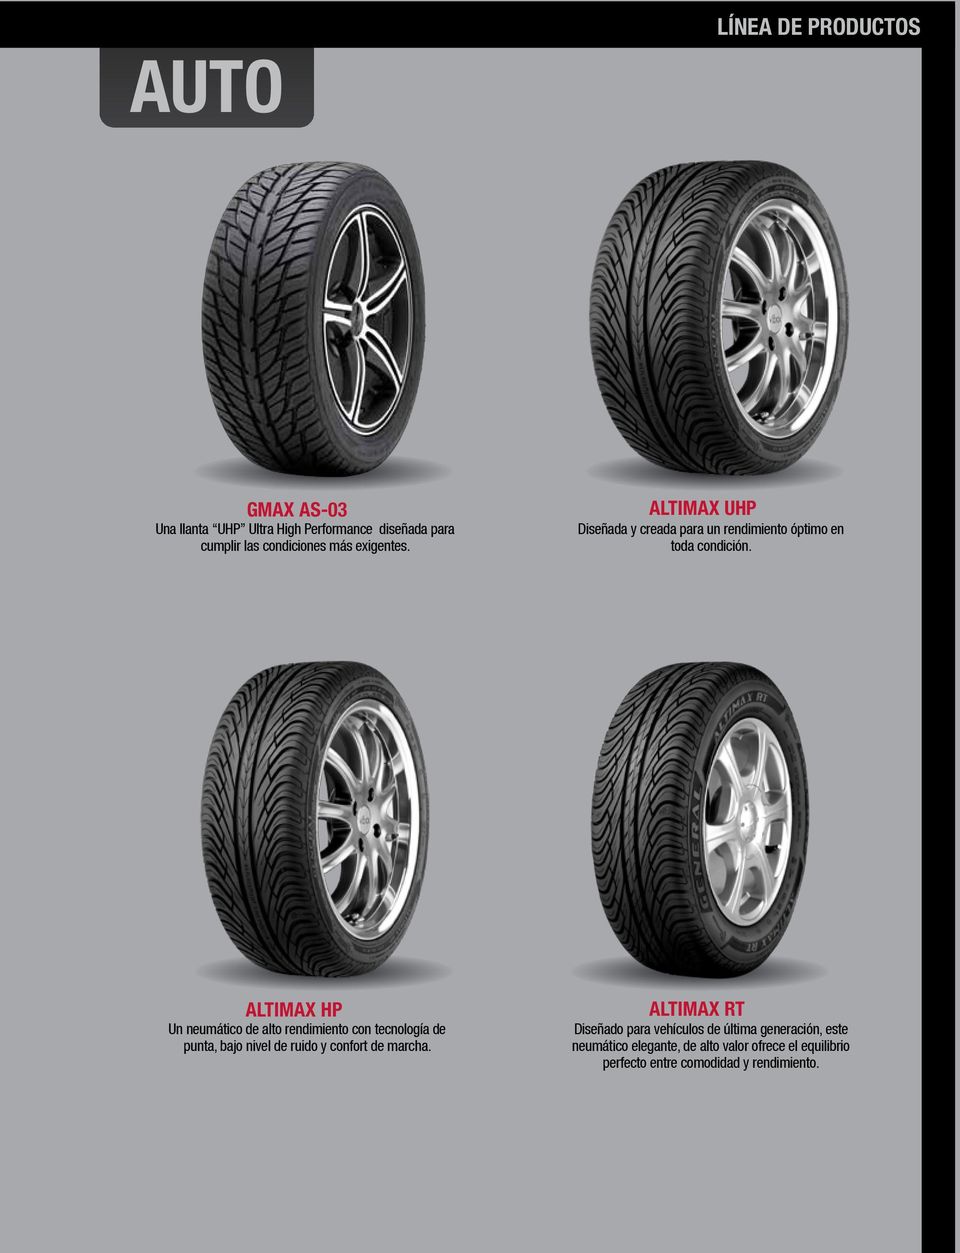 ALTIMAX HP Un neumático de alto rendimiento con tecnología de punta, bajo nivel de ruido y confort de marcha.